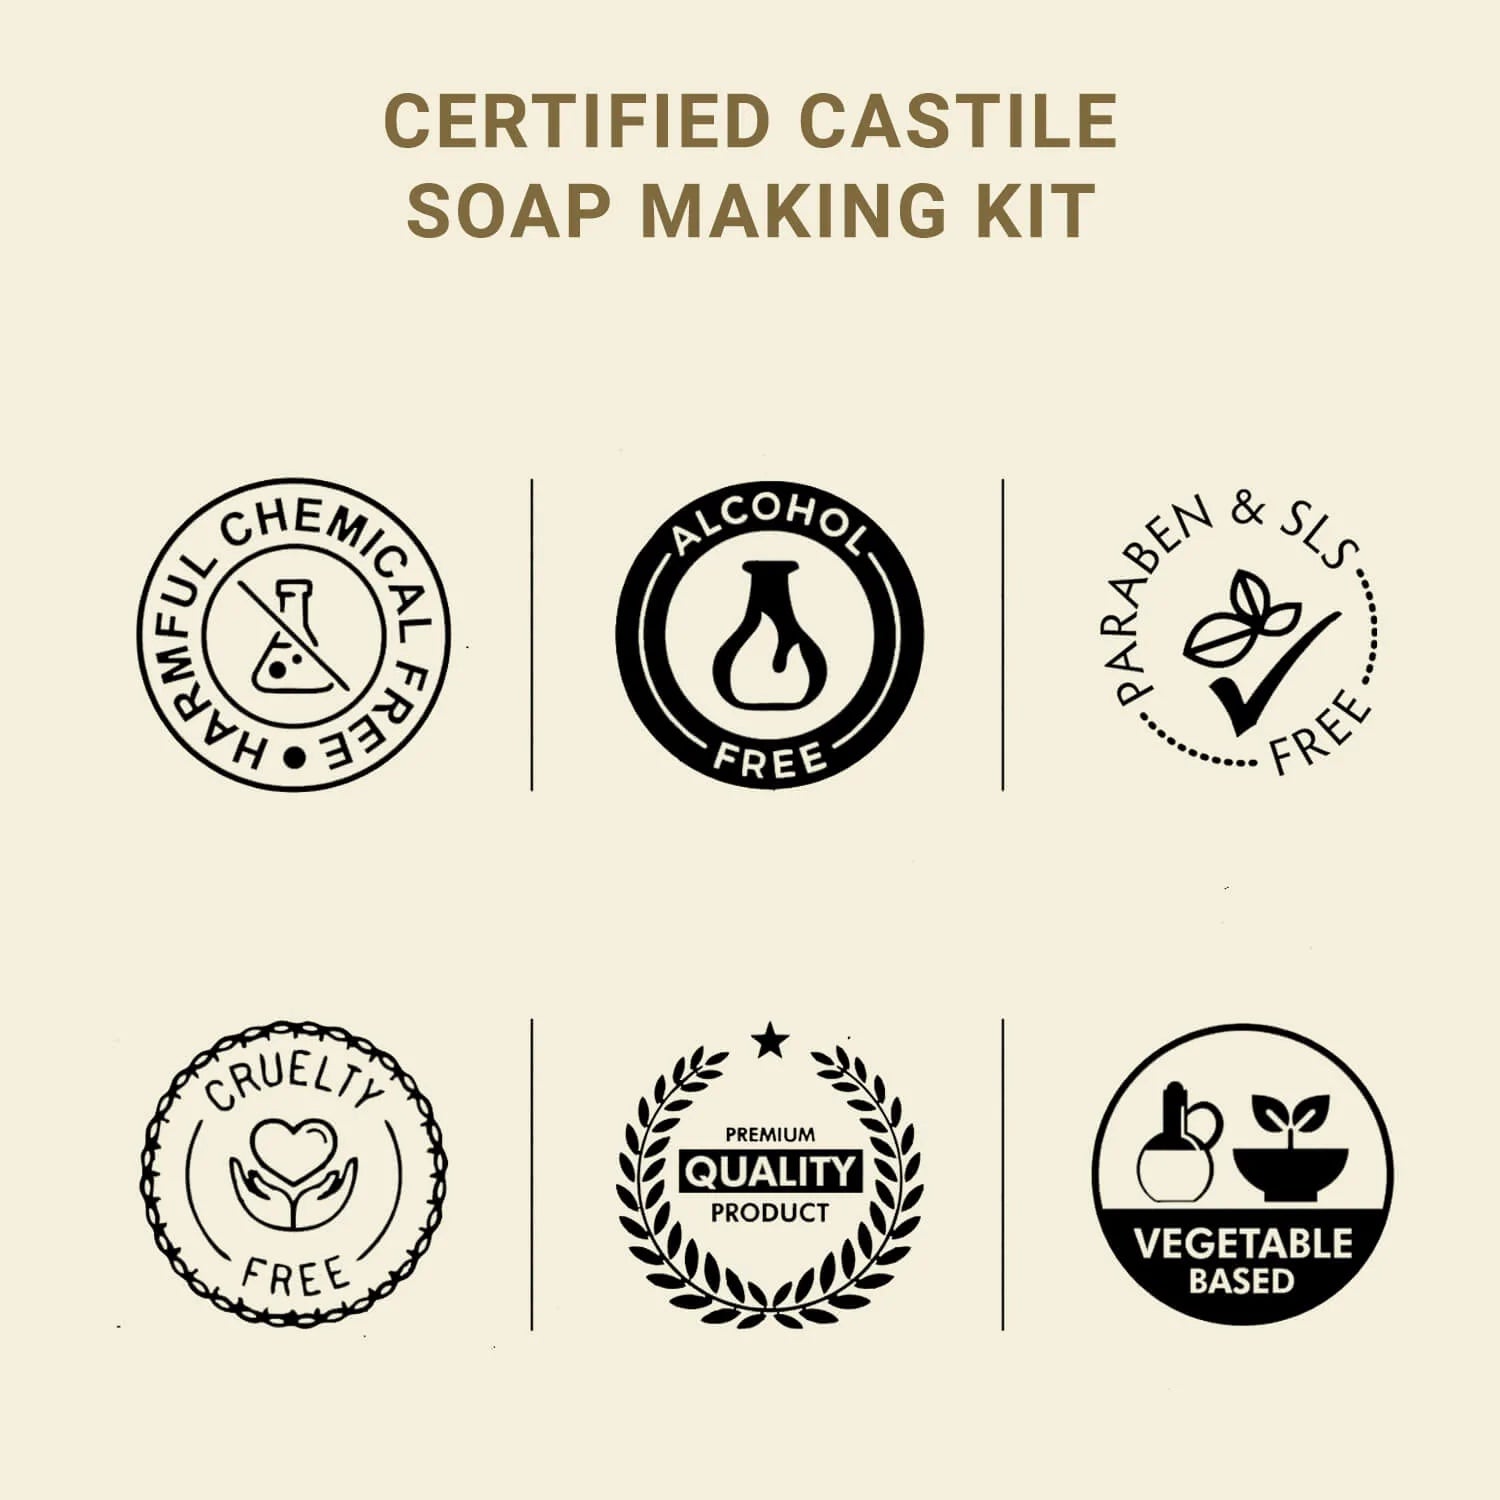 Castile Soap Bar Making Kit